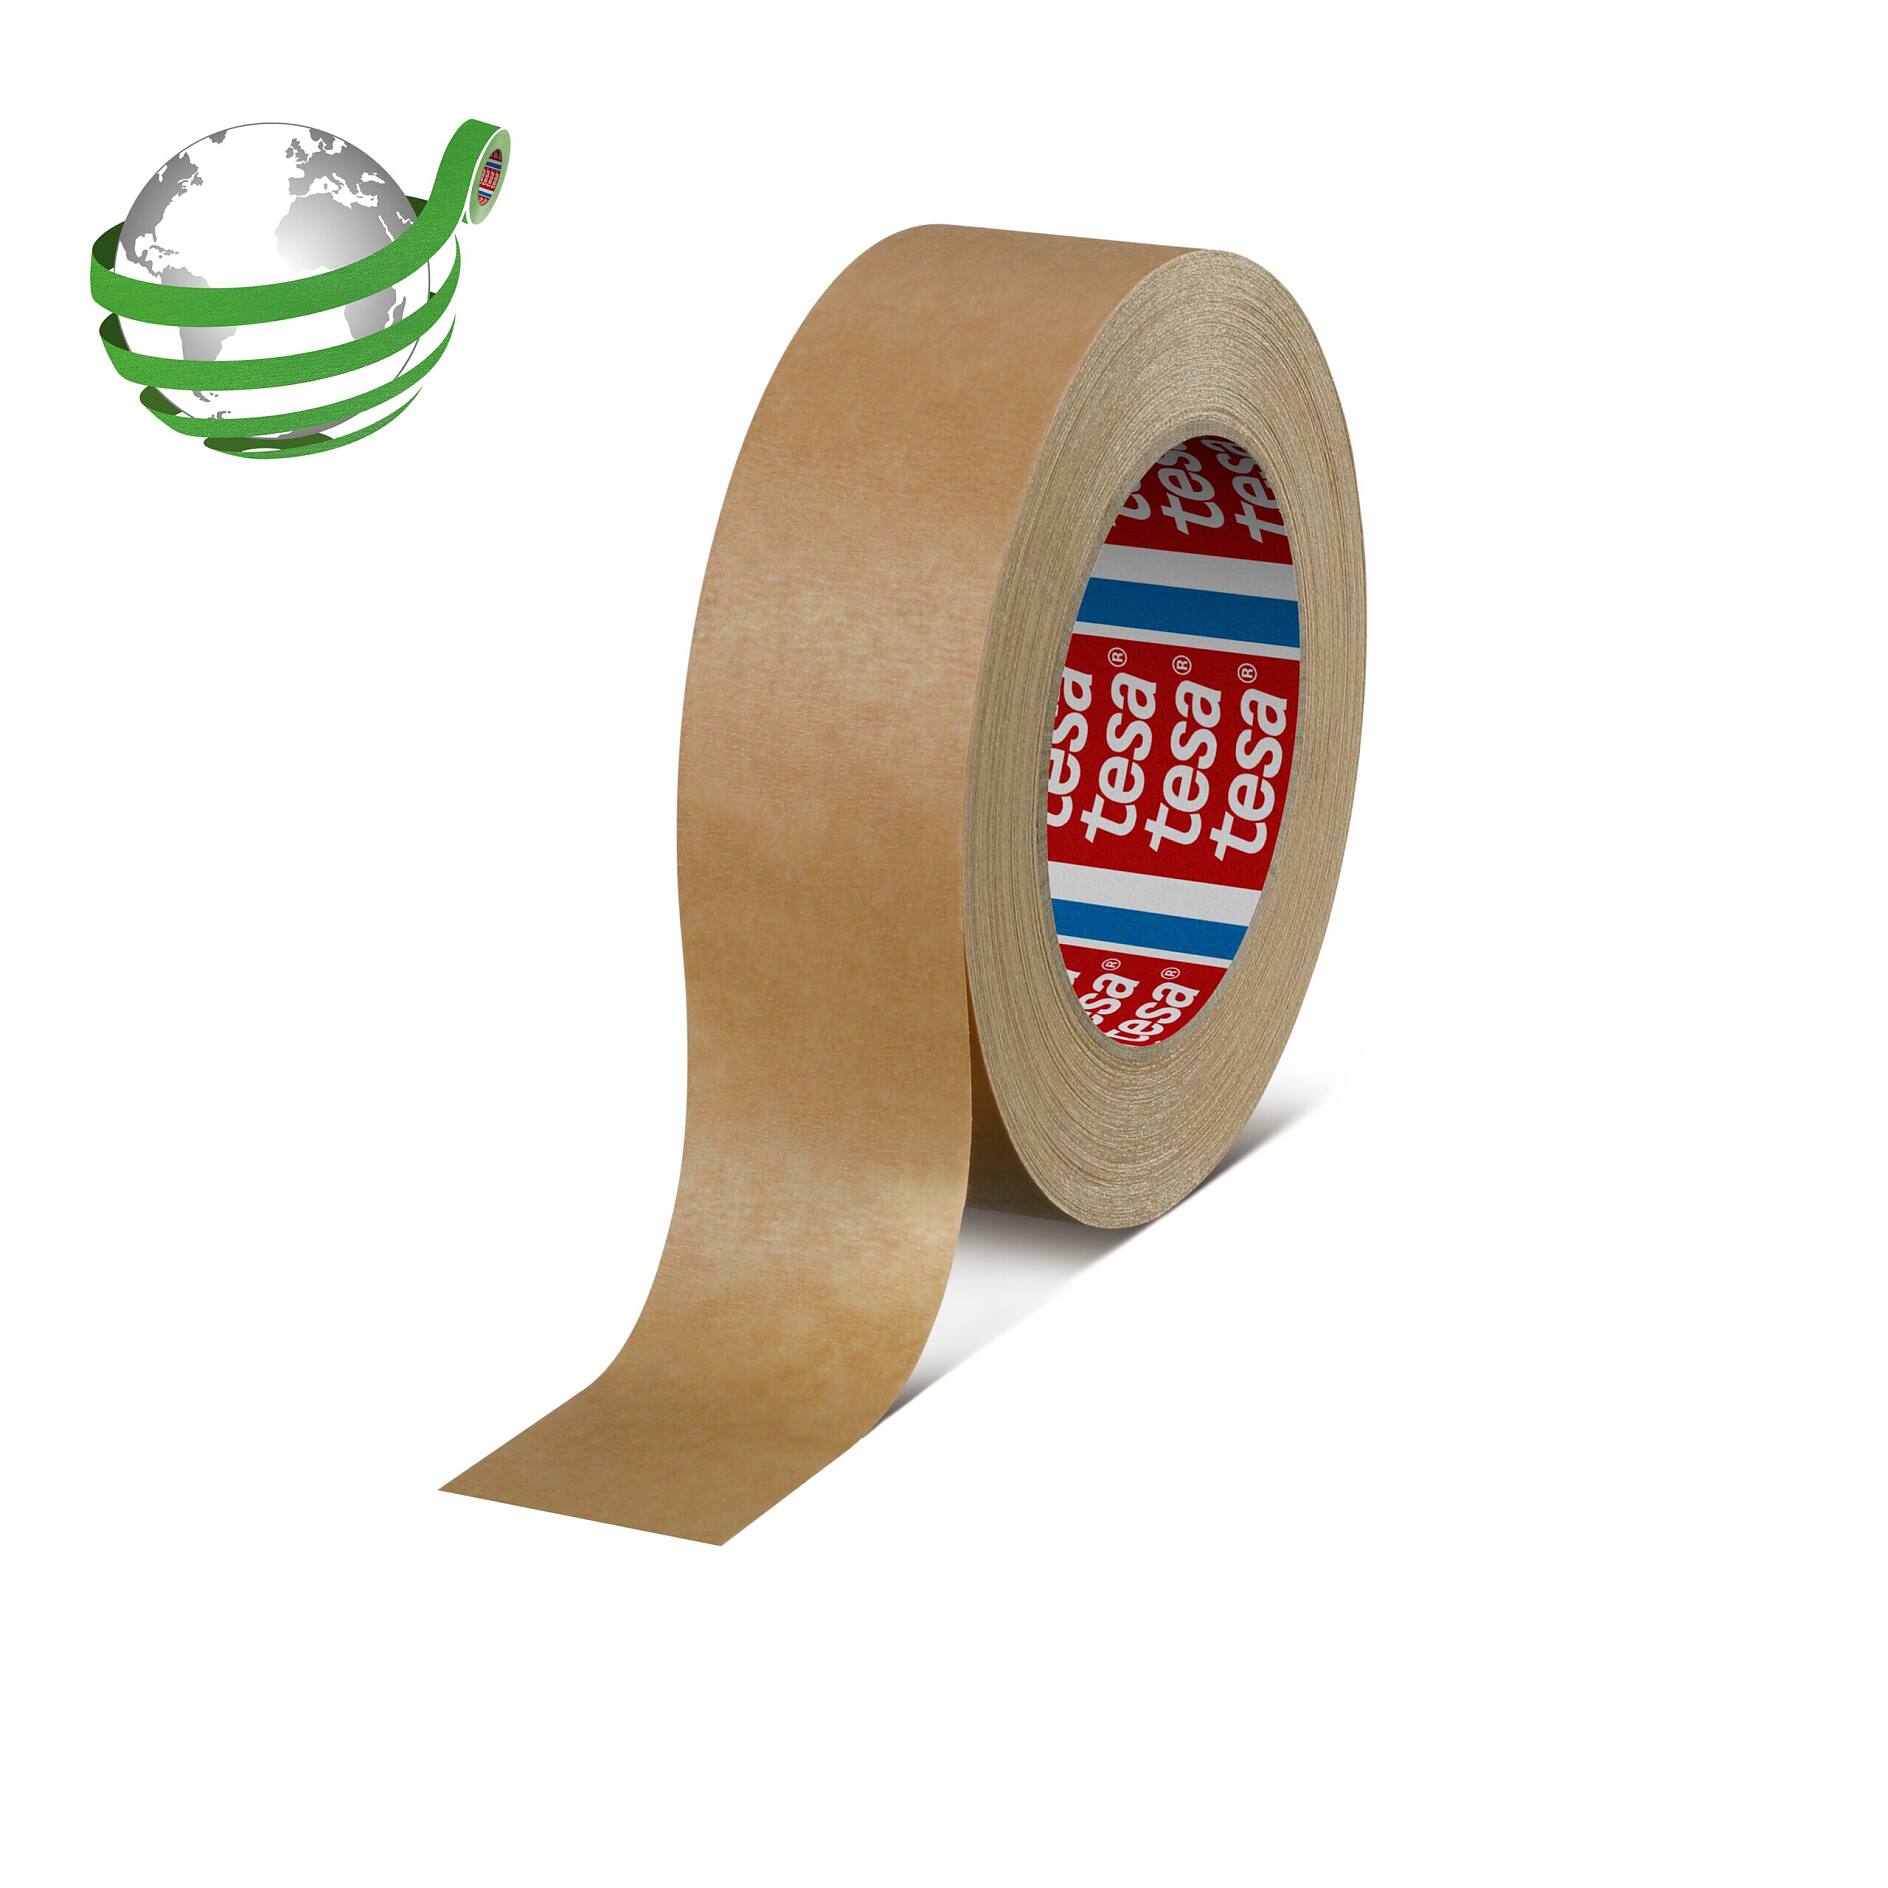 Tesa 4843 Premium Plaster Tape Specialties Masking Solutions